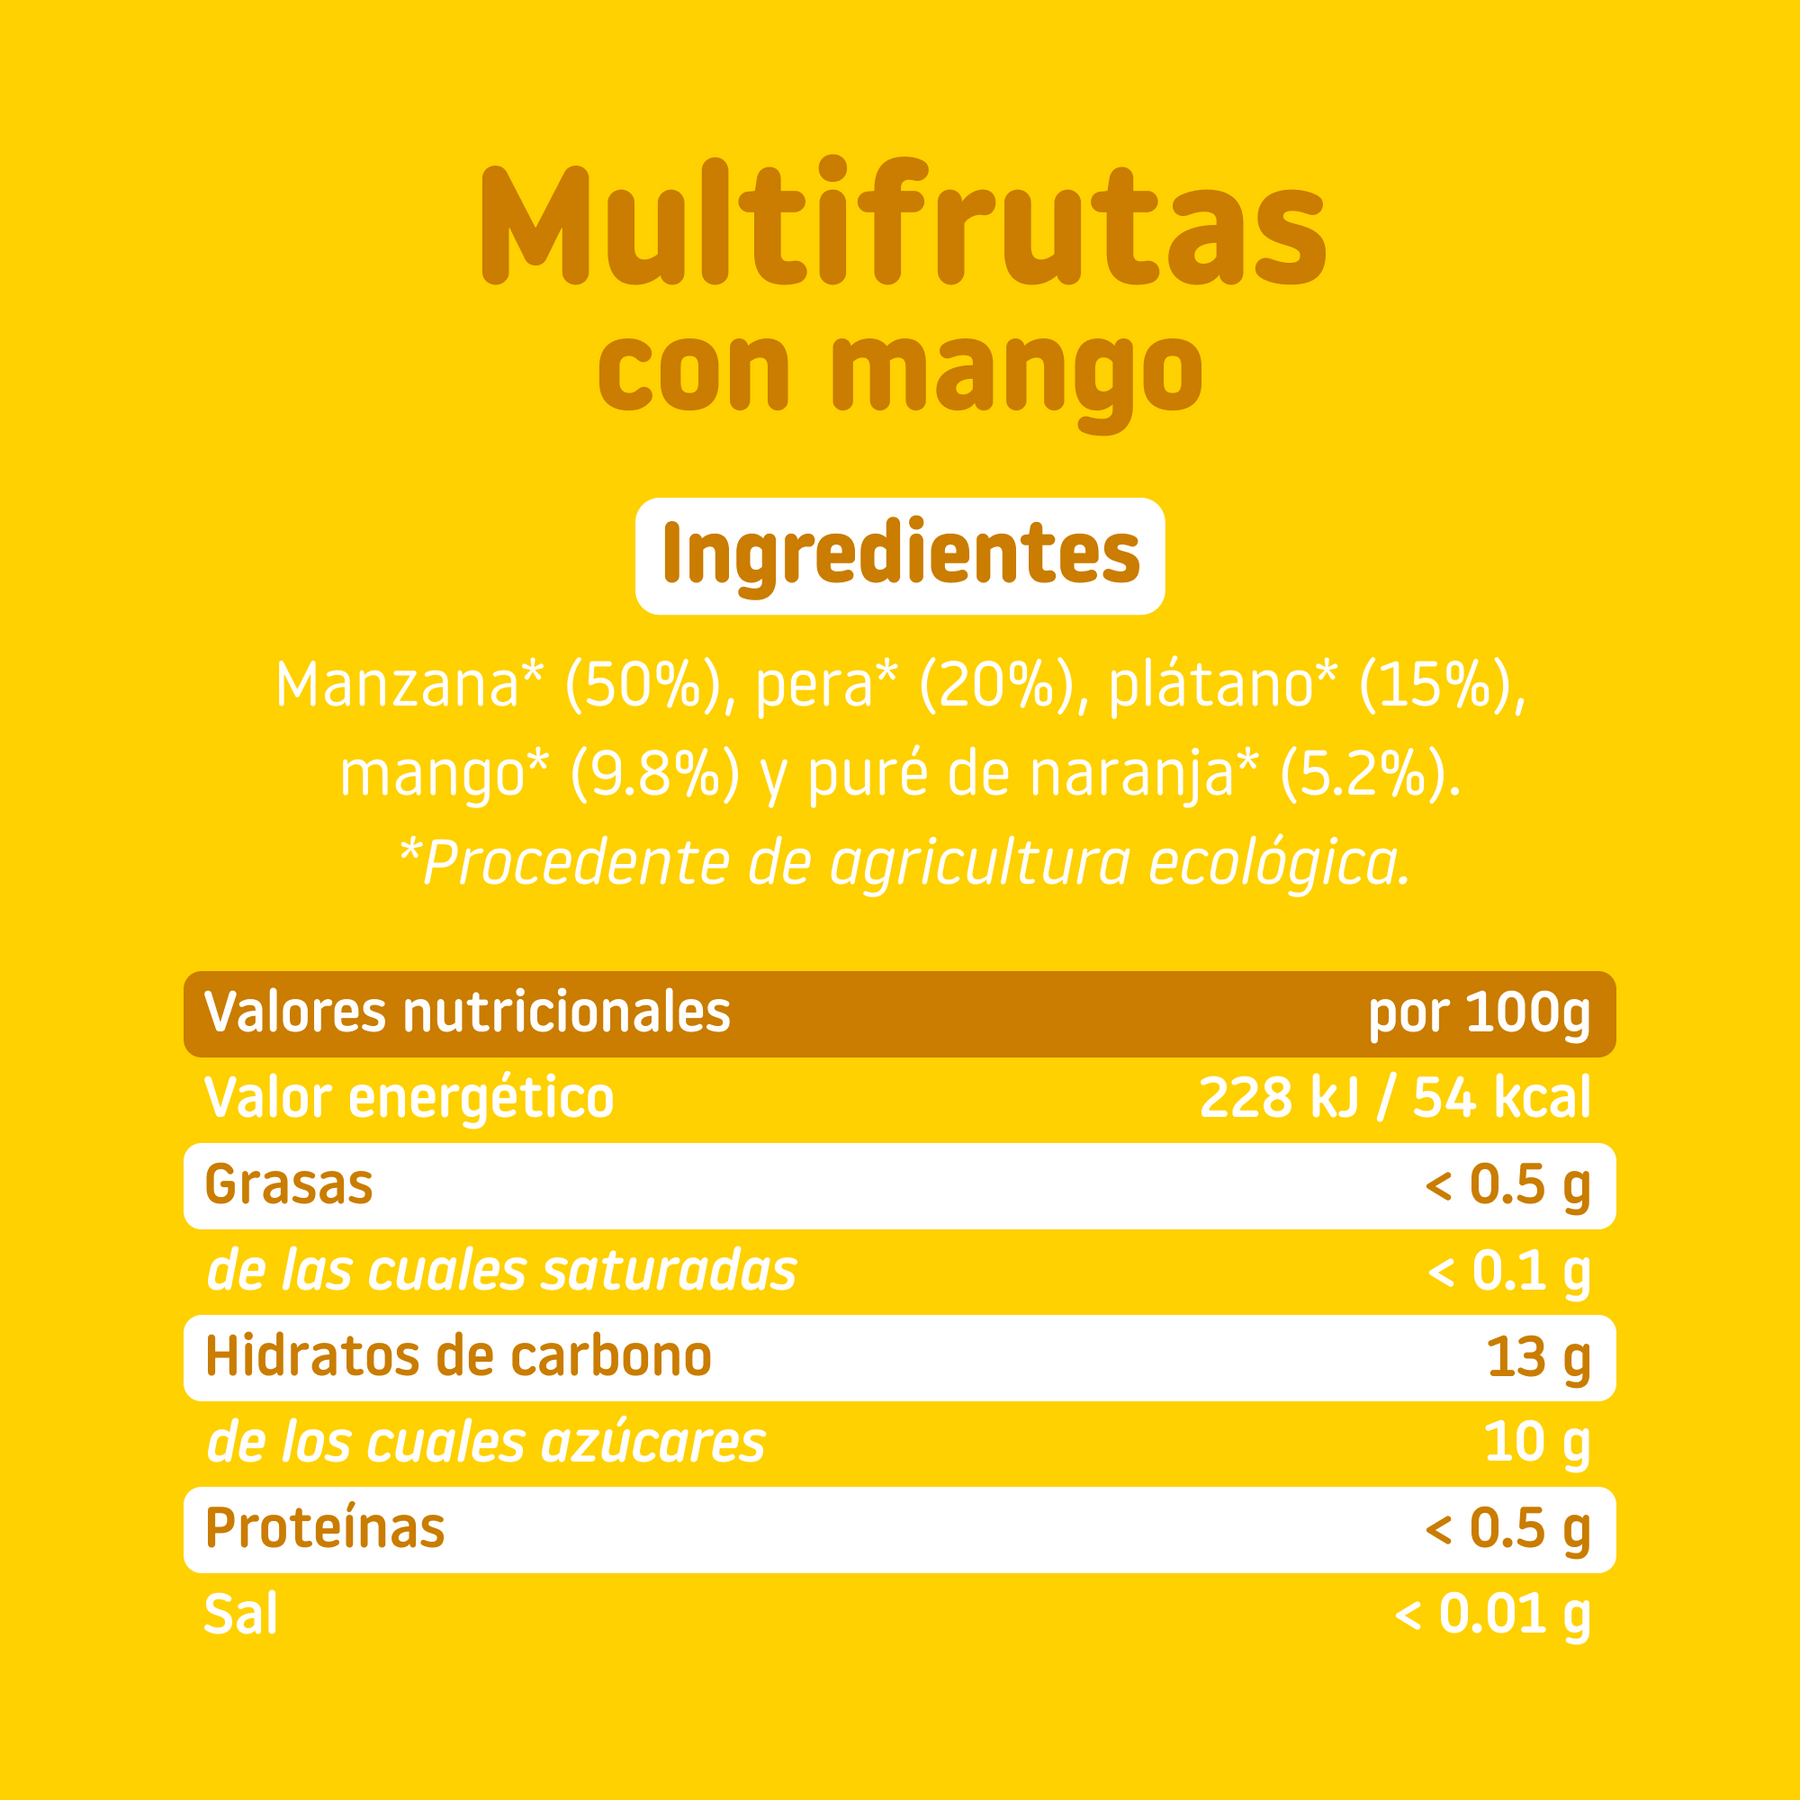 ingredientes del tarrito de multifruta con mango